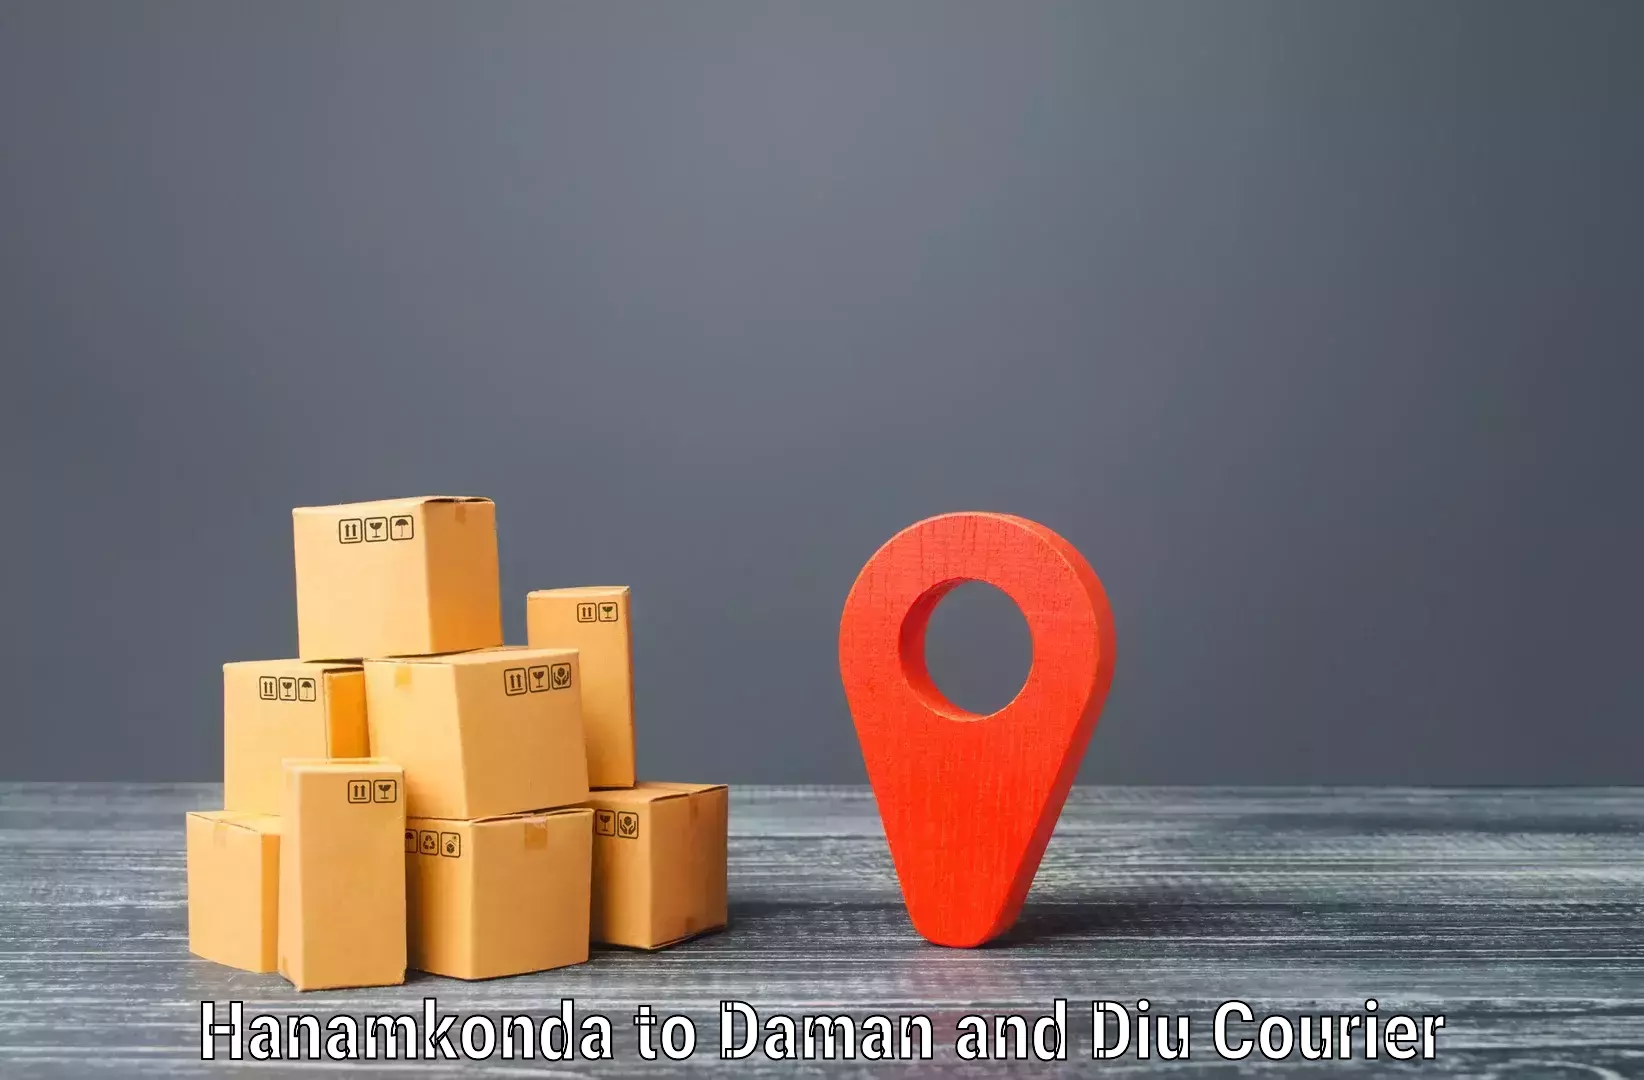 Efficient logistics management Hanamkonda to Diu